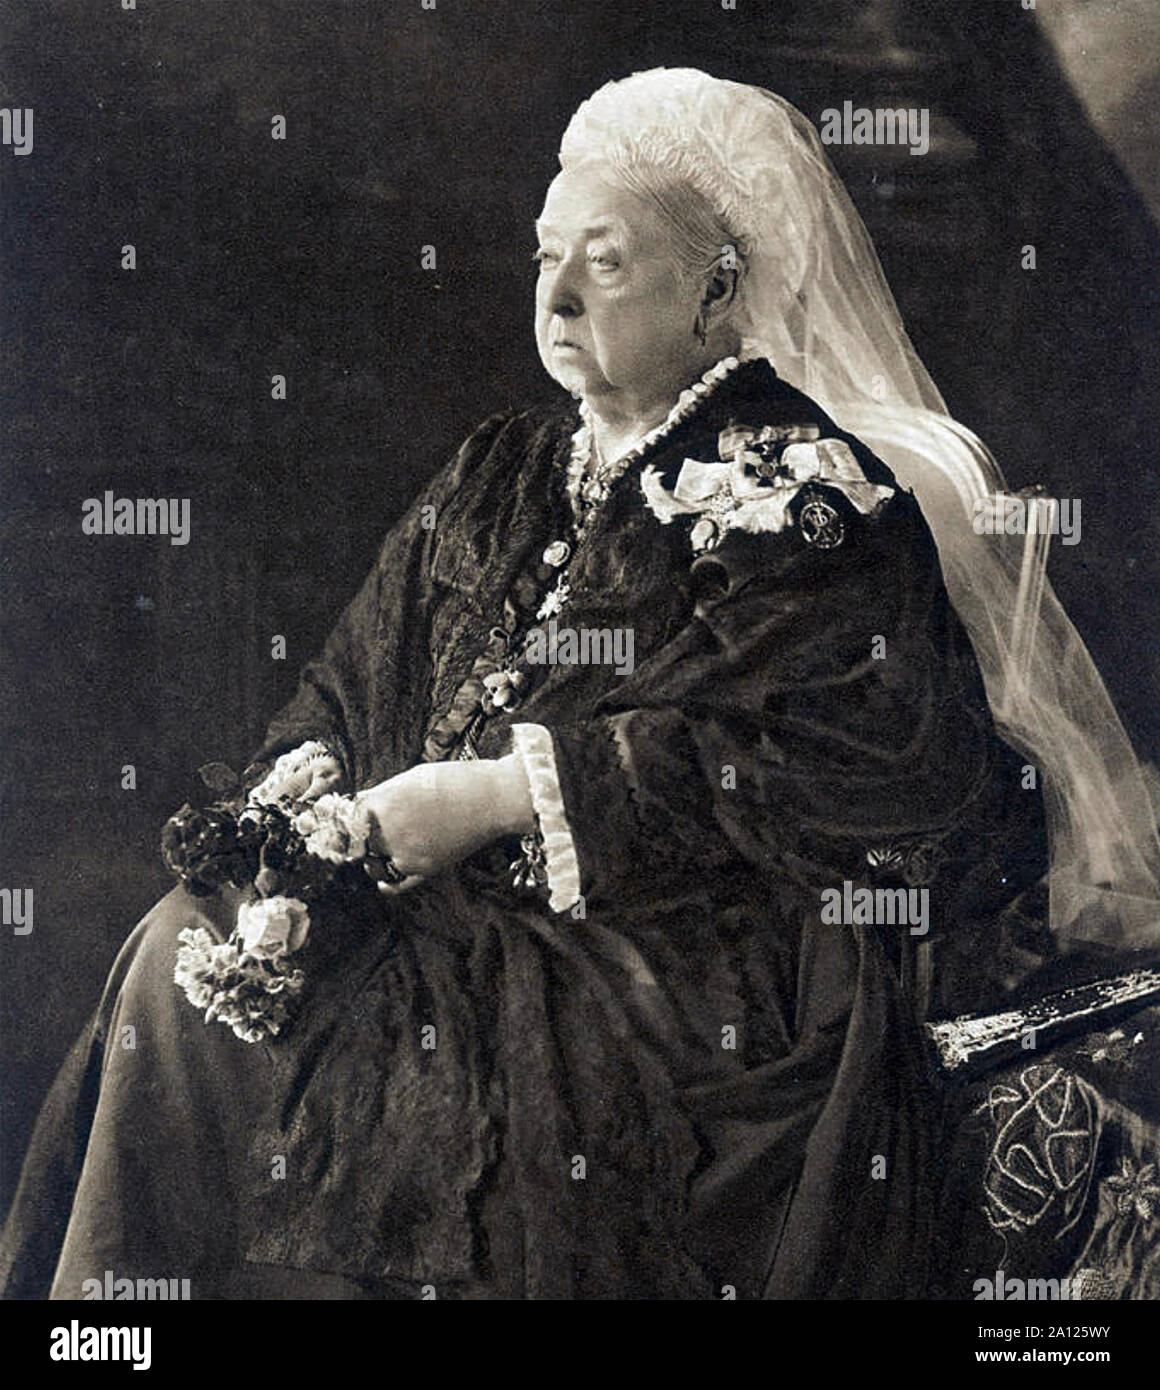 QUEEN VICTORIA (1819-1901) in 1899 Stock Photo